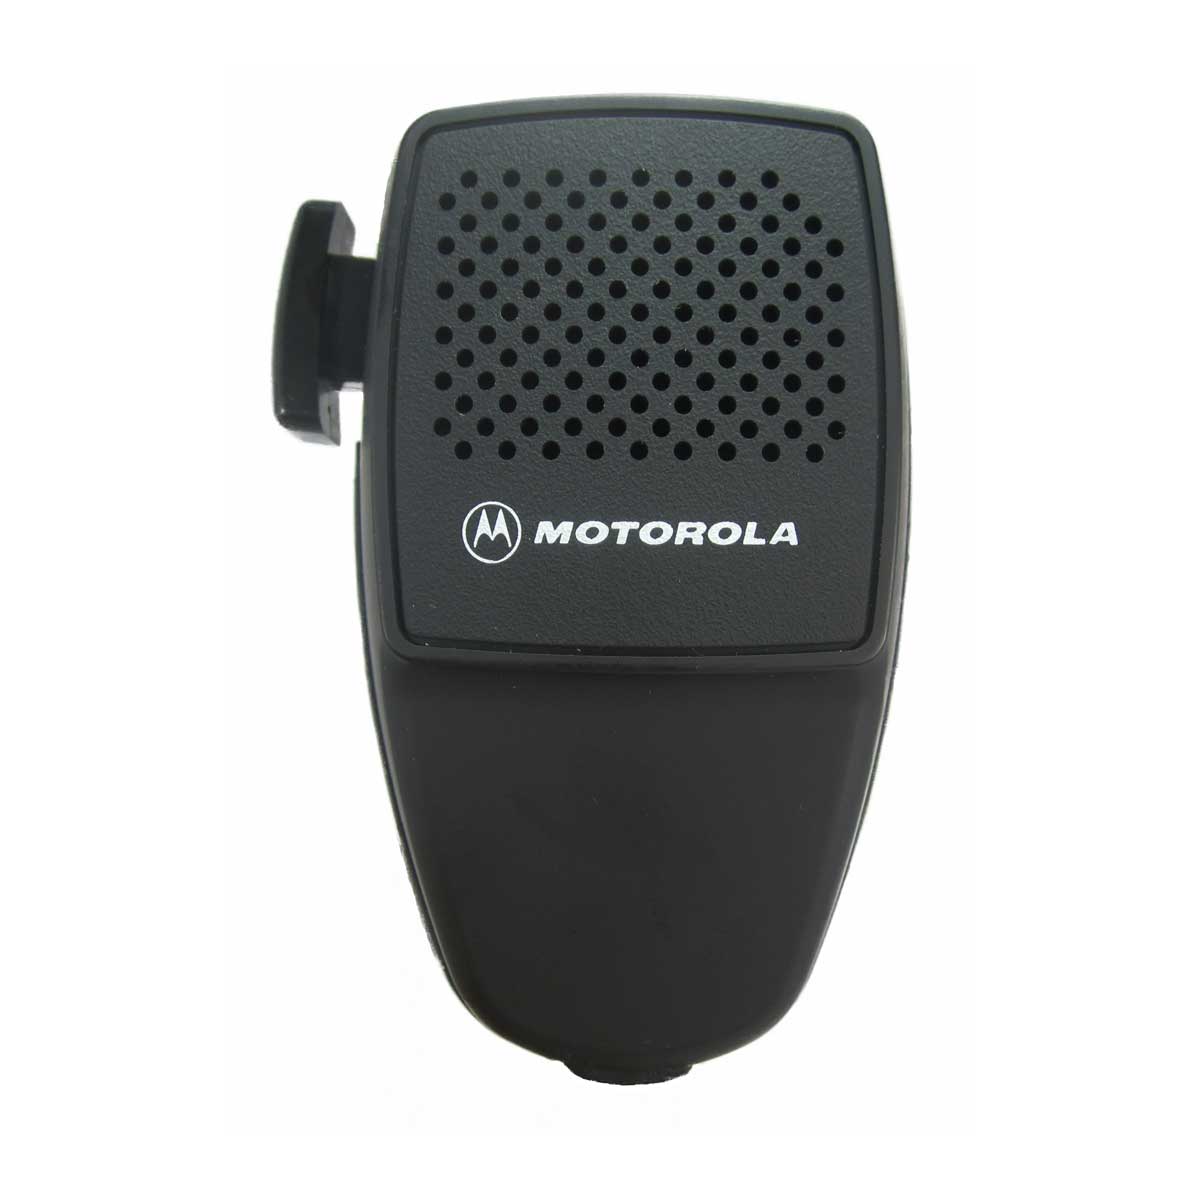 Micrófono Motorola HMN3413 para radio móvil